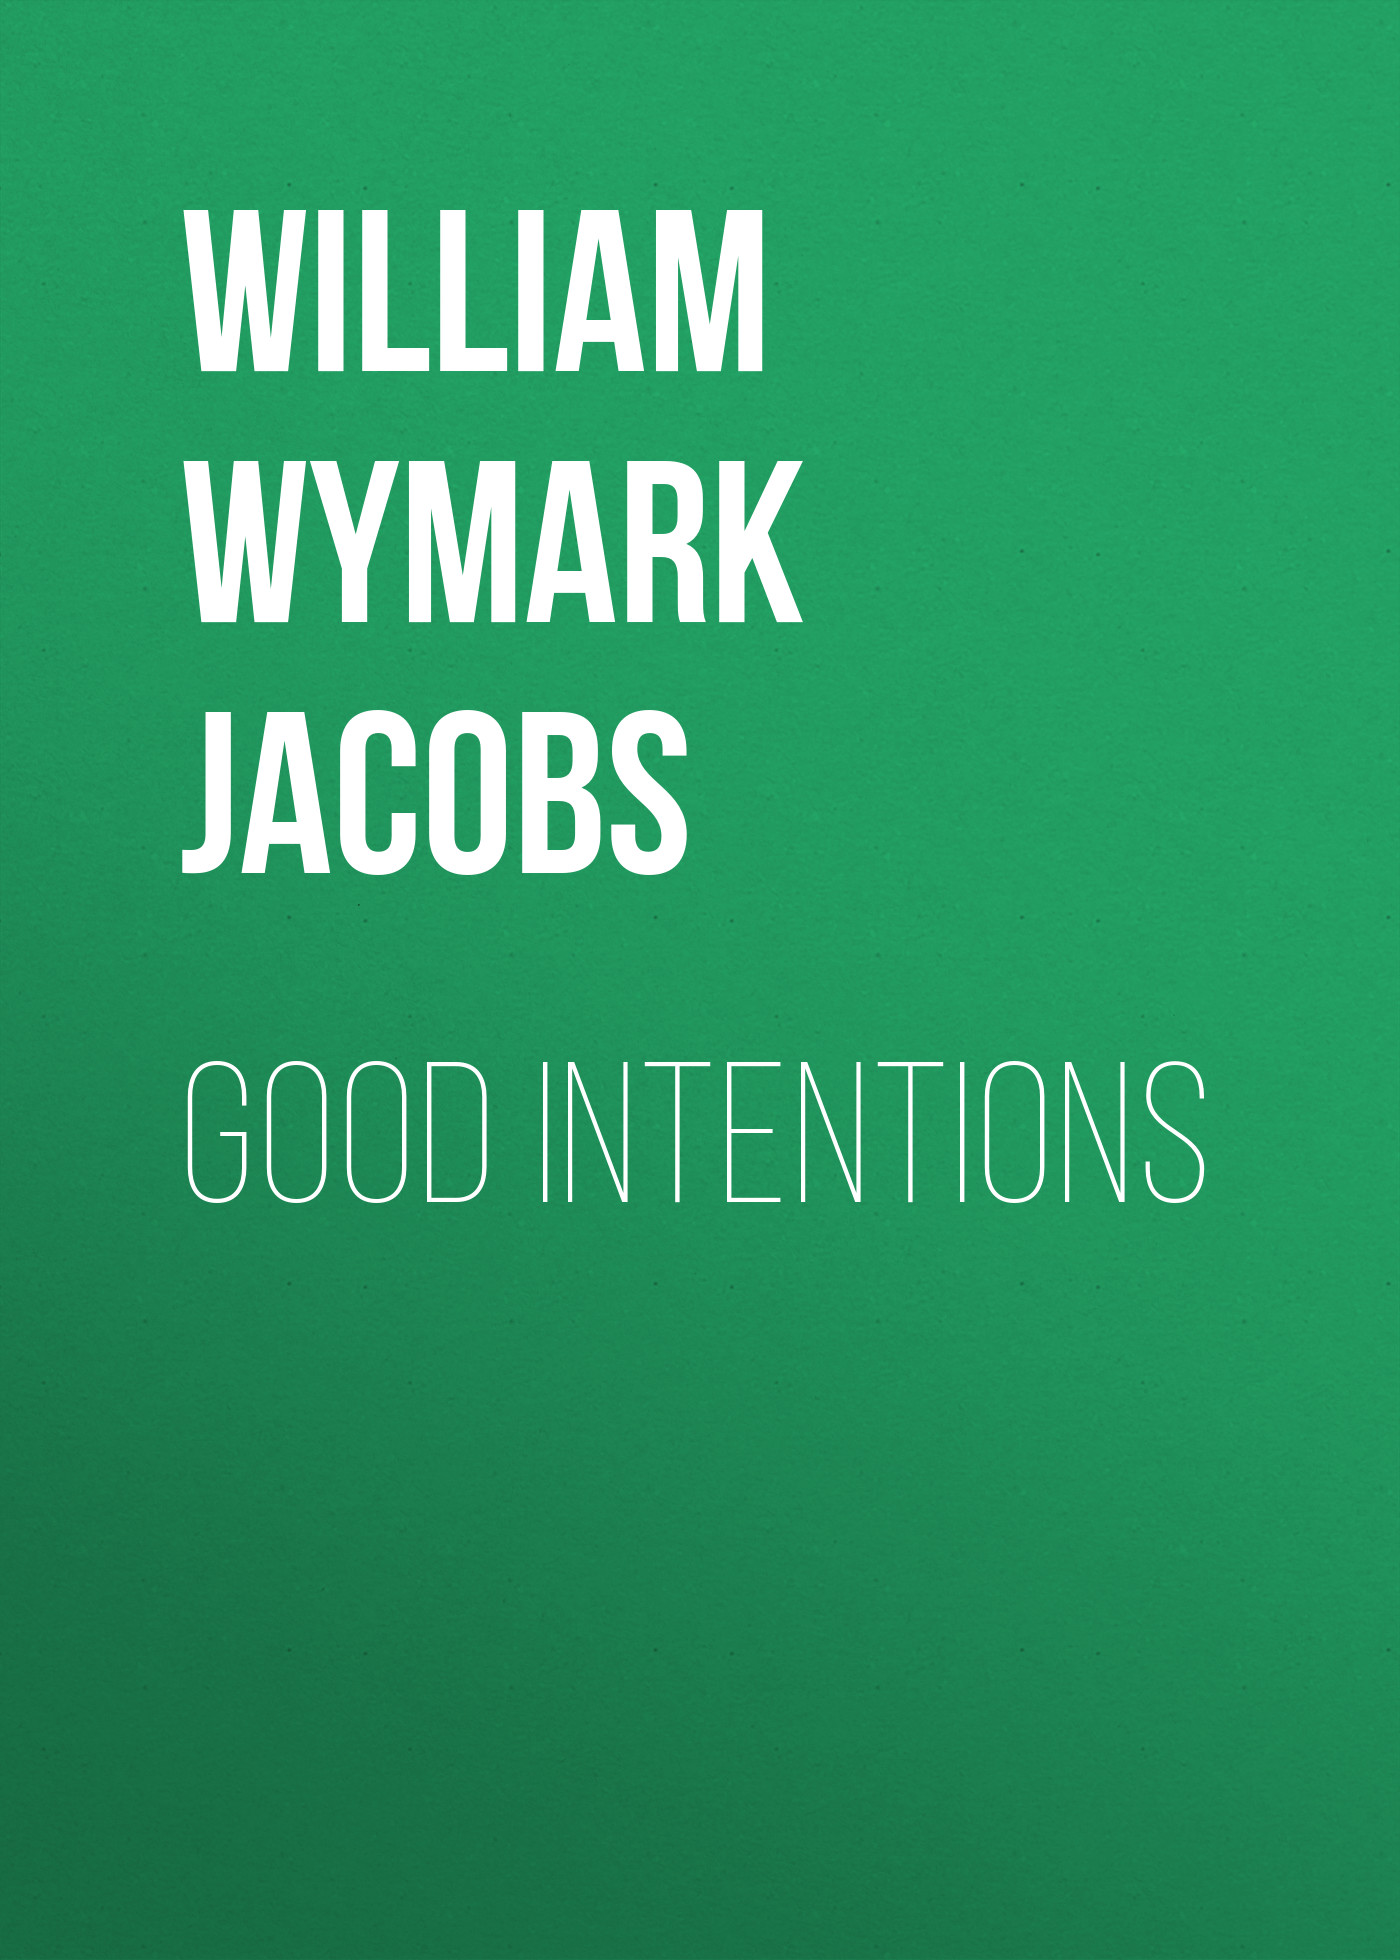 Книга Good Intentions из серии , созданная William Wymark Jacobs, может относится к жанру Зарубежная классика, Зарубежная старинная литература. Стоимость электронной книги Good Intentions с идентификатором 34842494 составляет 0 руб.